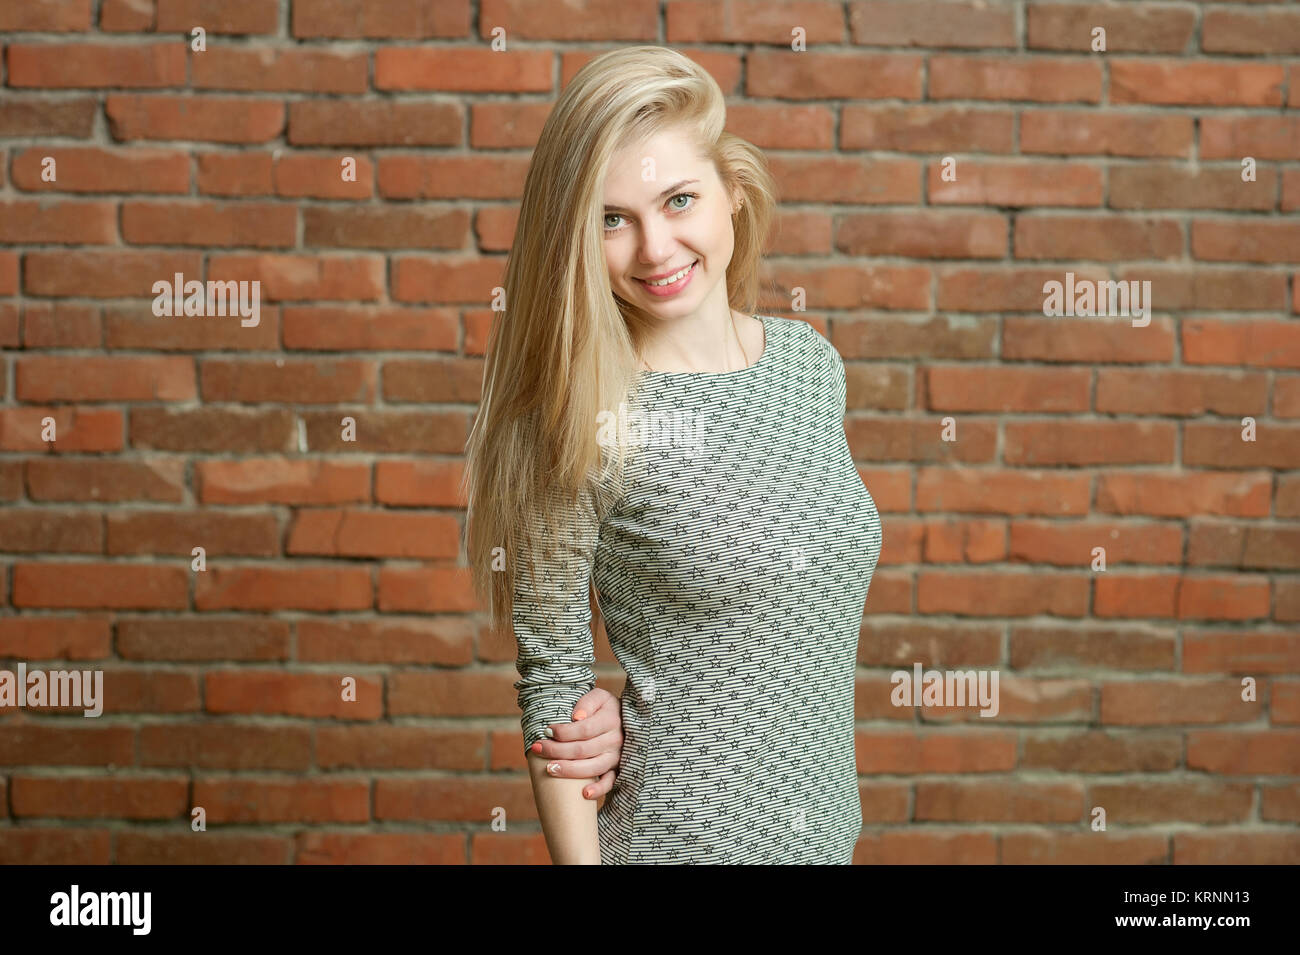 Porträt einer Blondine in einen leichten Pullover. Gegen die Red brick wall Hintergrund stehend, lächelnd und für die Kamera posieren. ihr langes Haar ist in einer Richtung festgelegt Stockfoto